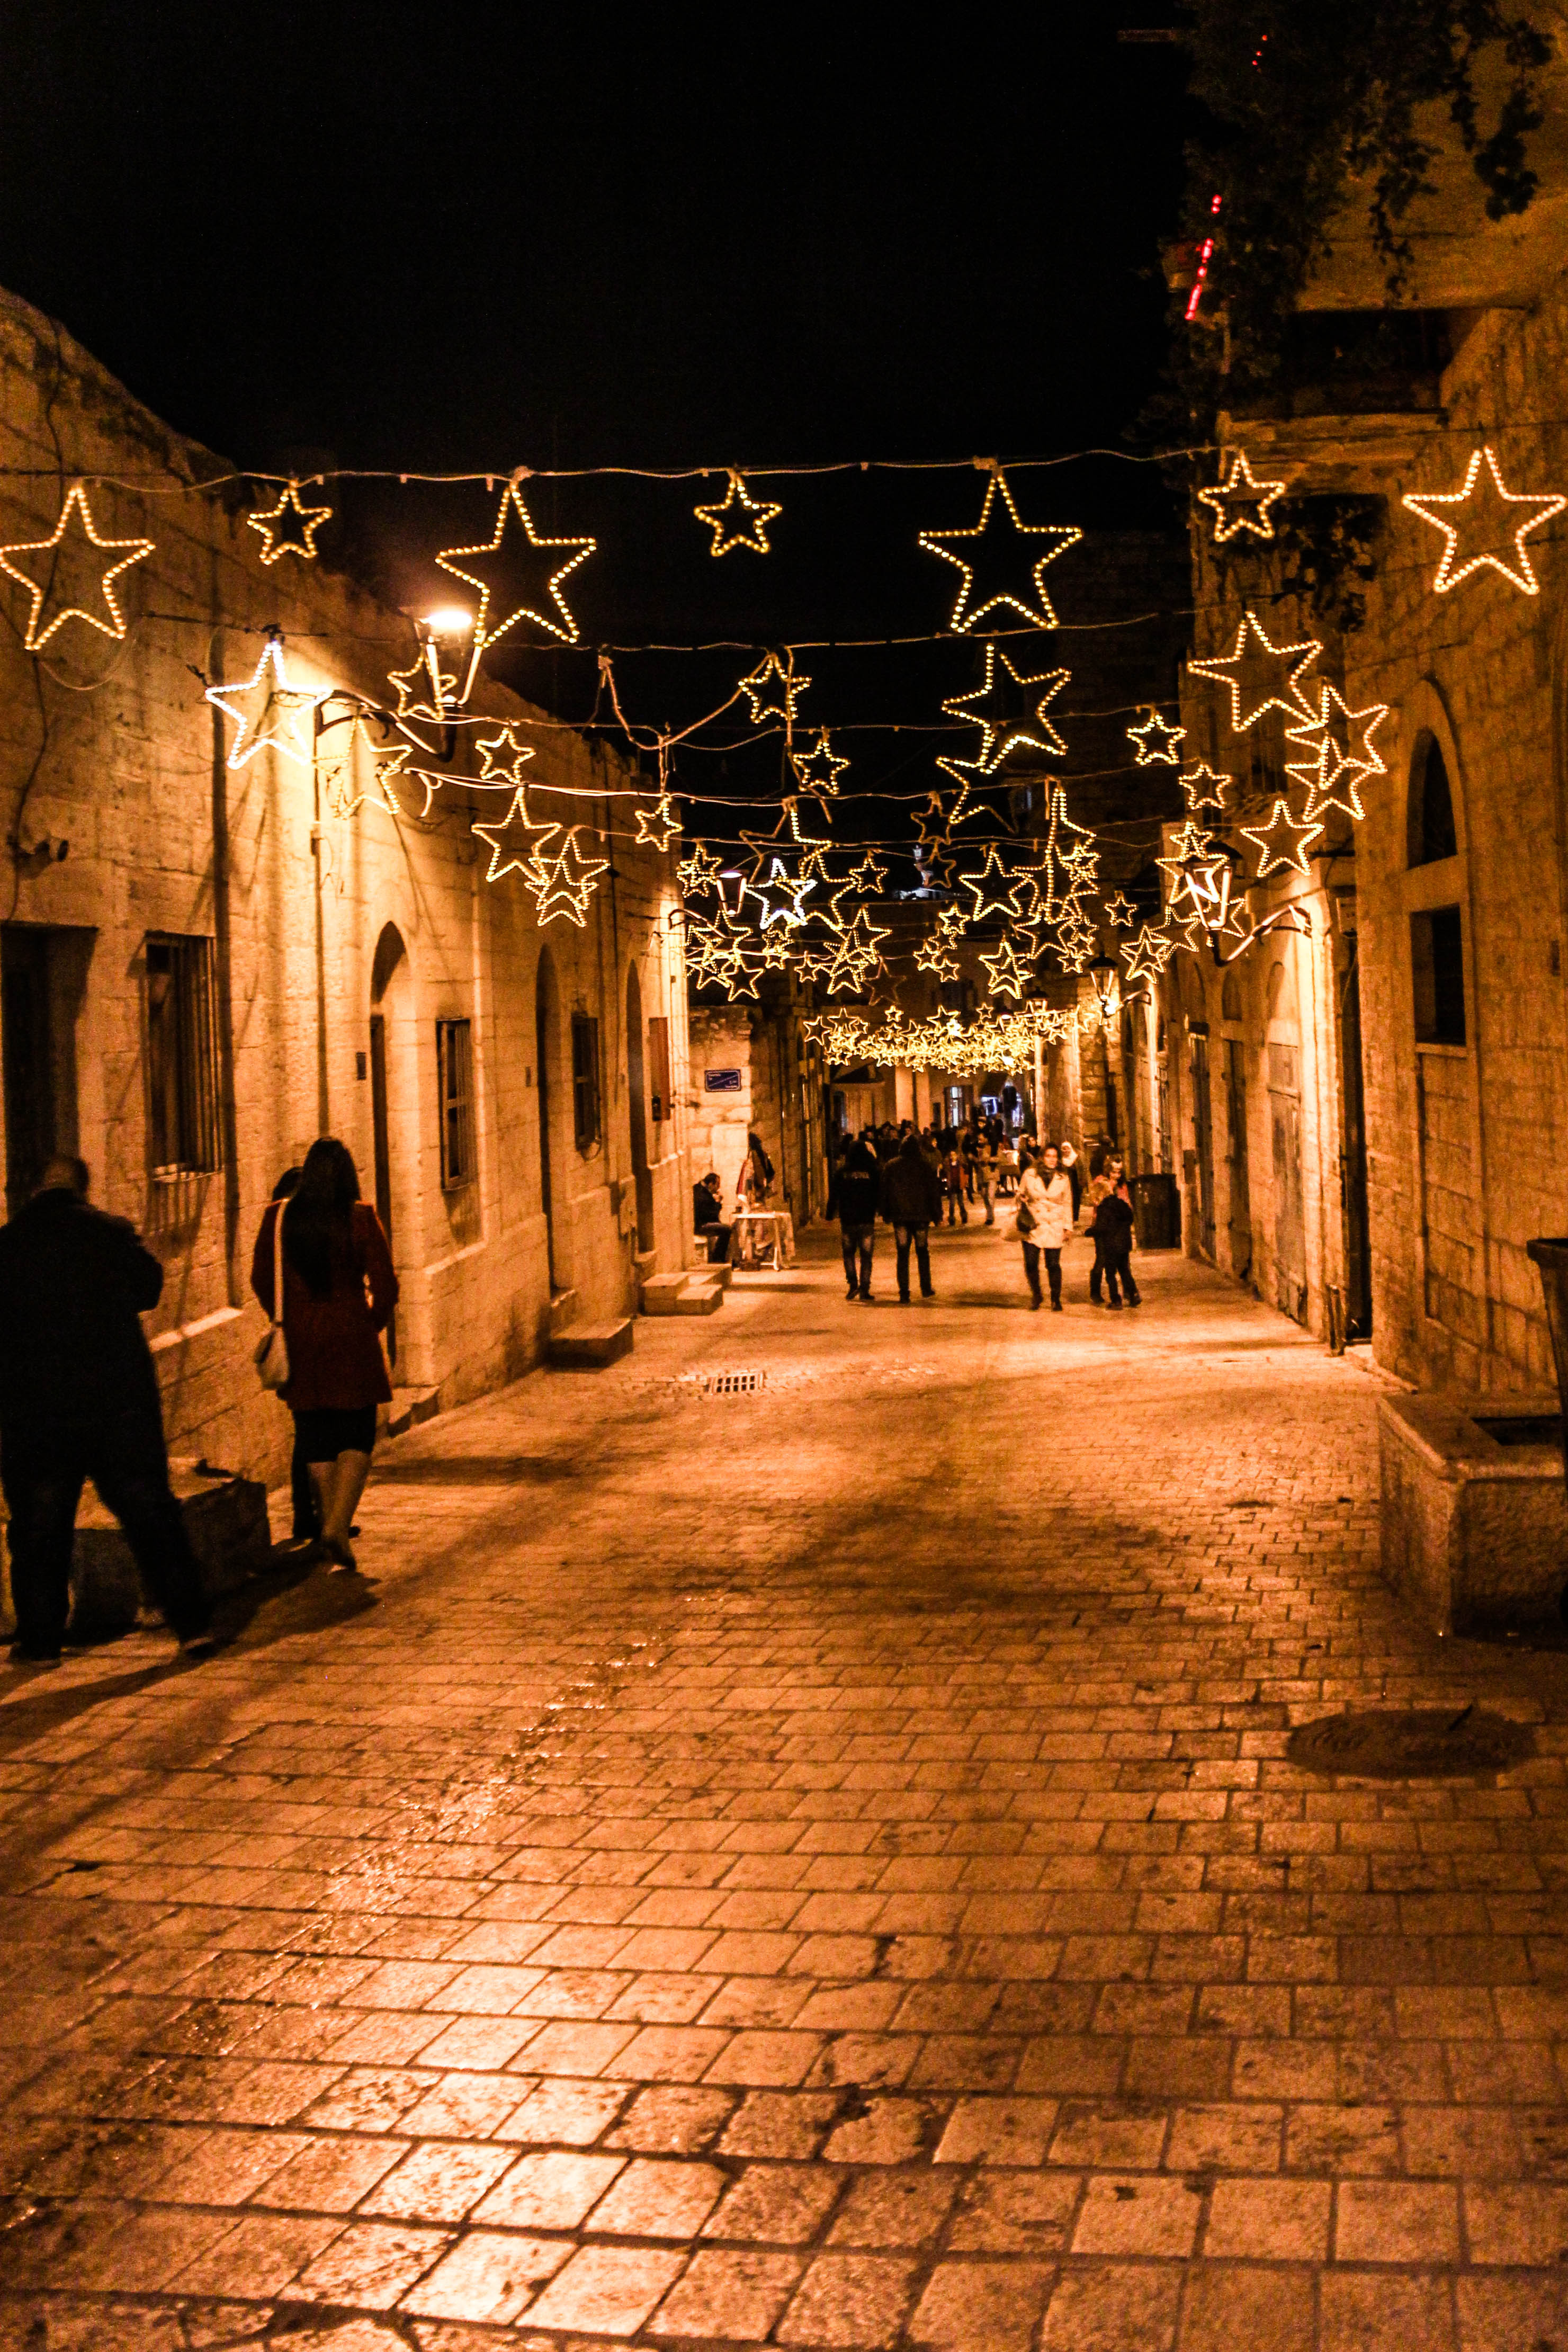 Star Street in Bethlehem, one of the oldest streets of Bethlehem